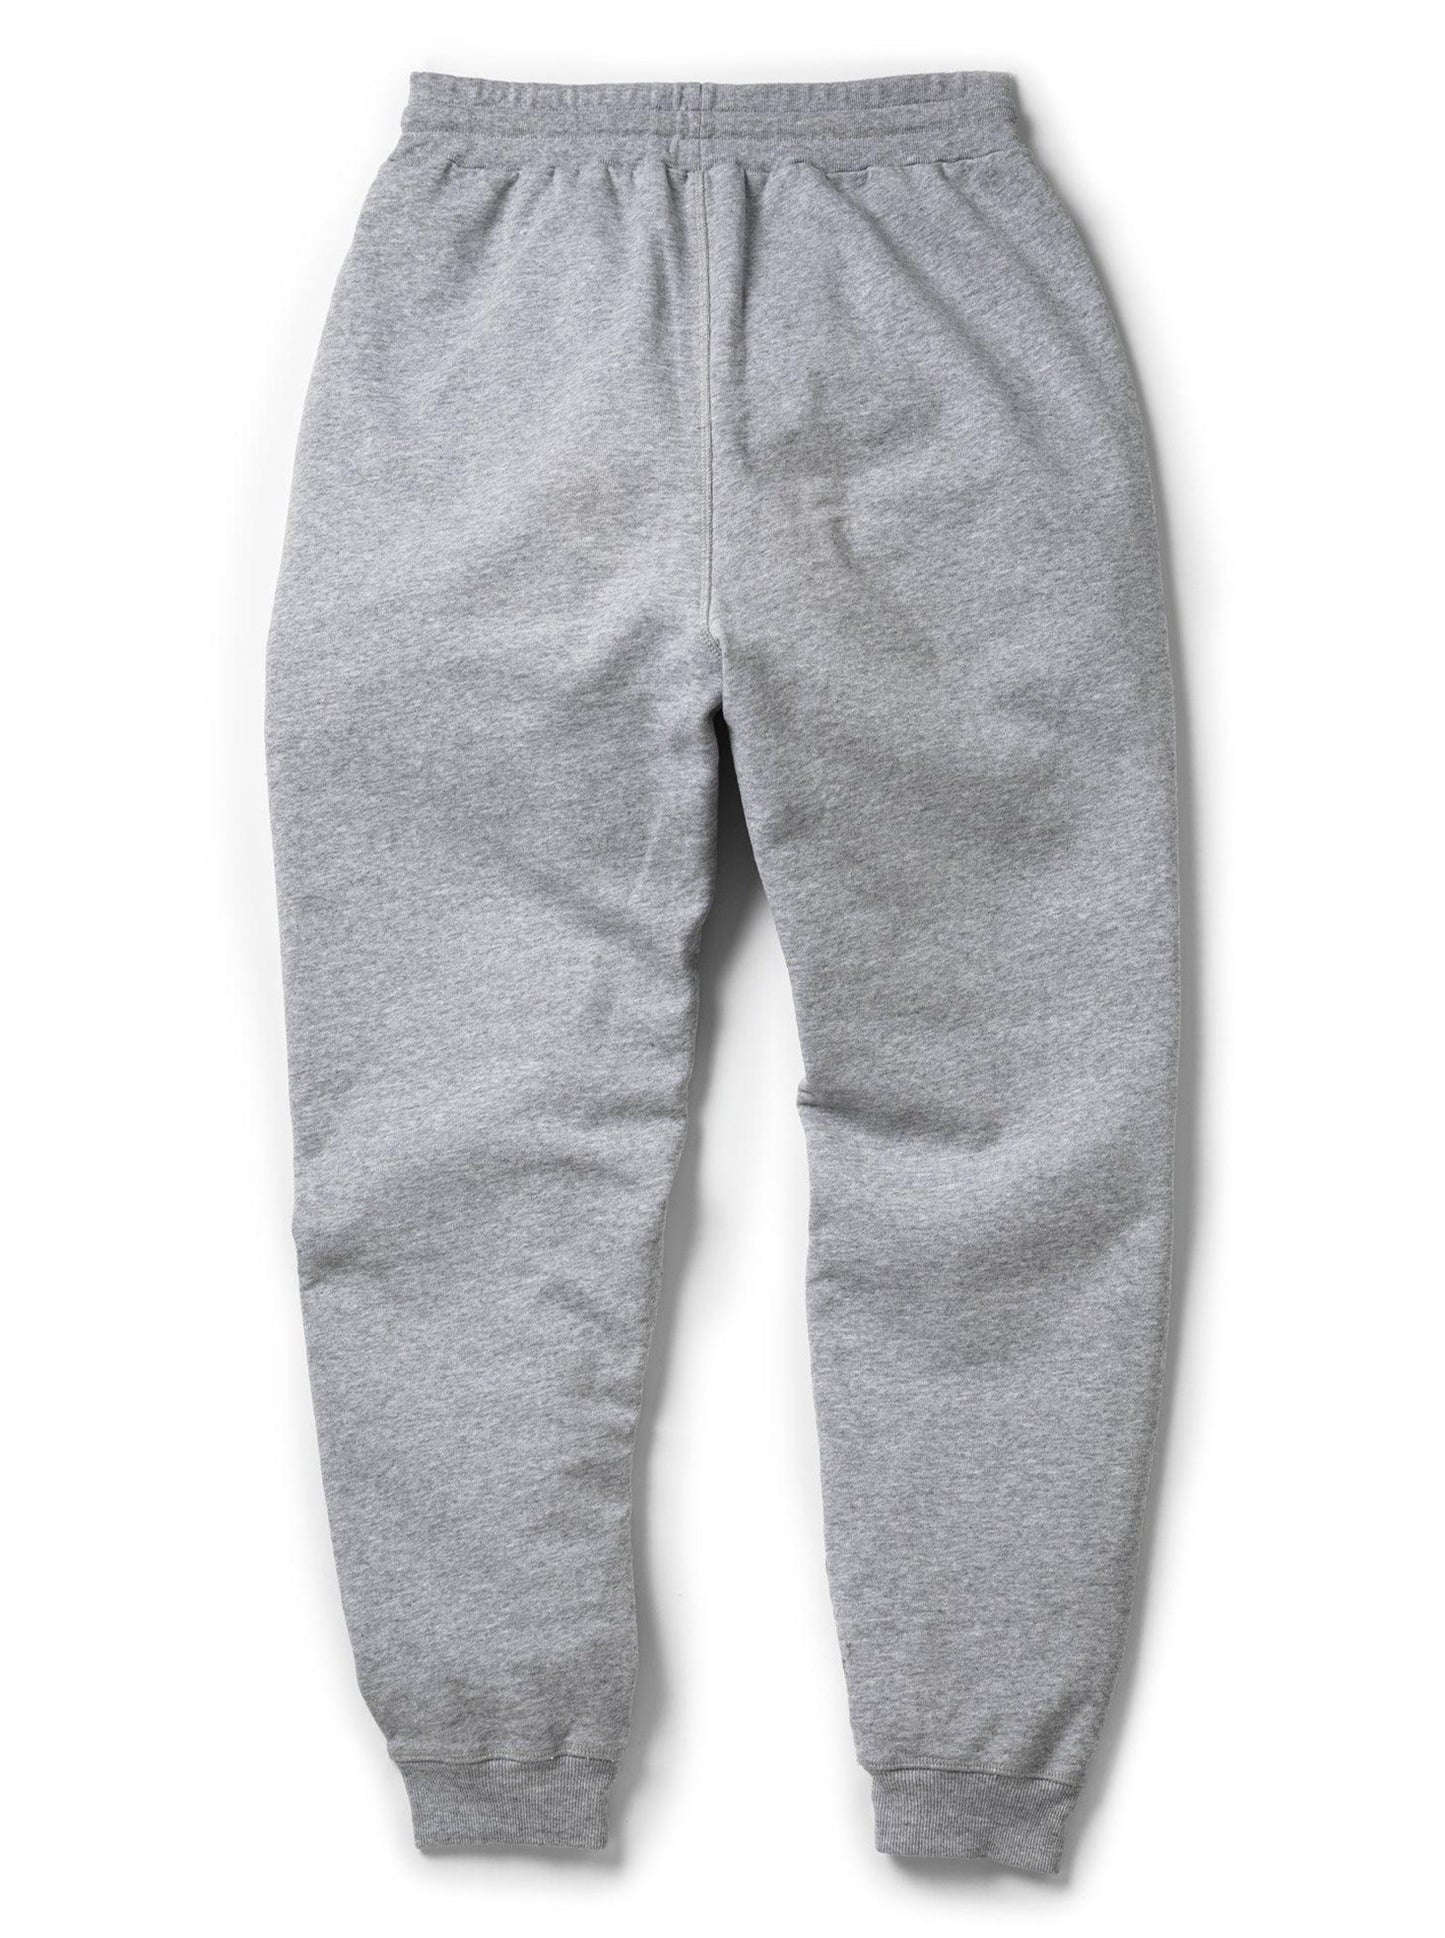 
                  
                    Women's Sweatpants - Grey - ORILABO Project
                  
                